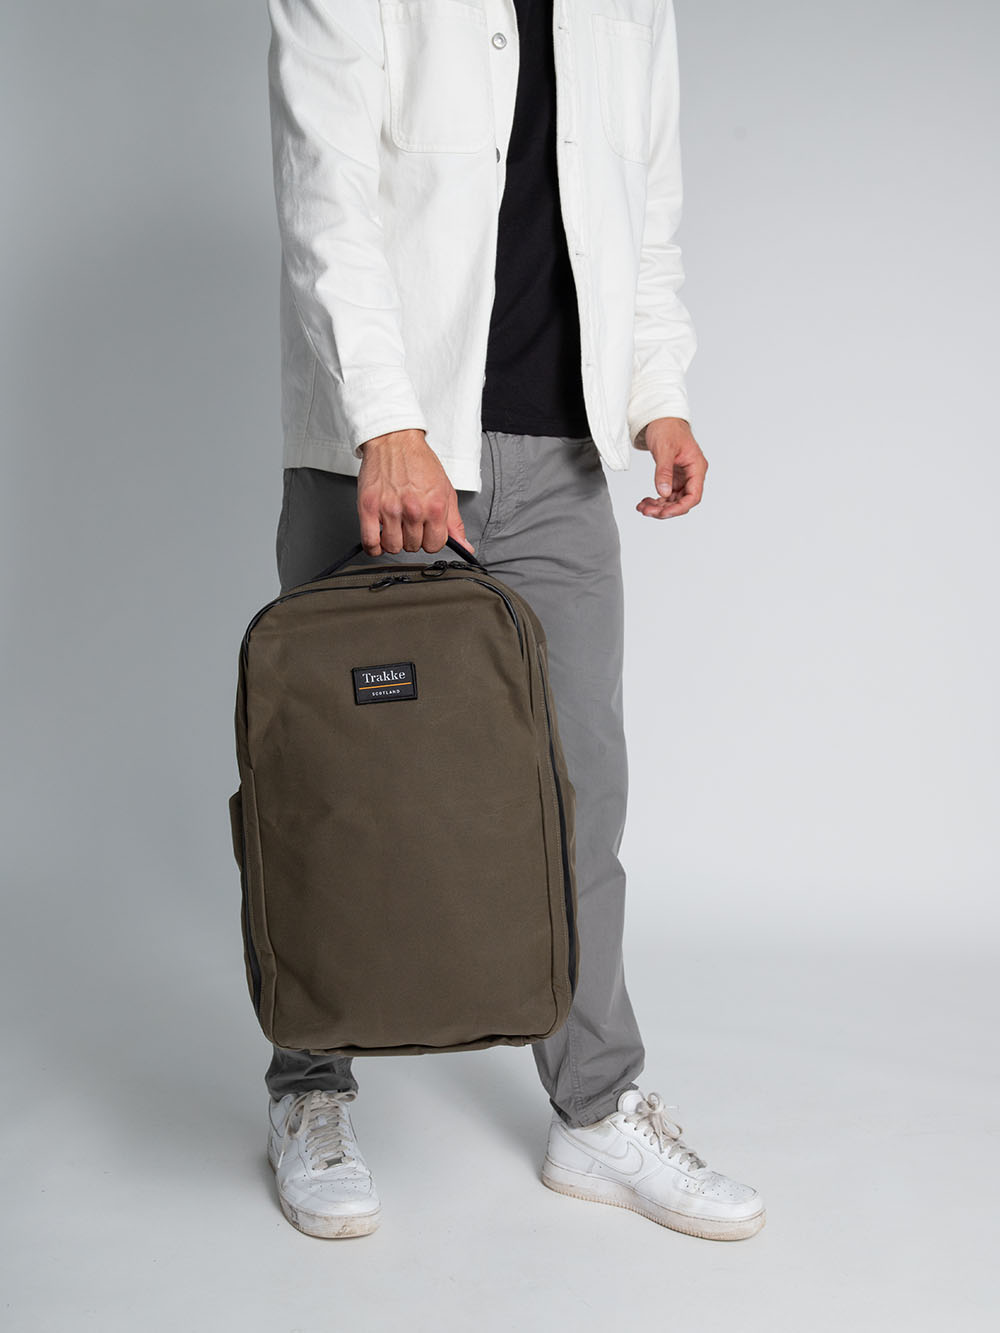 Storr 25L Travel Backpack